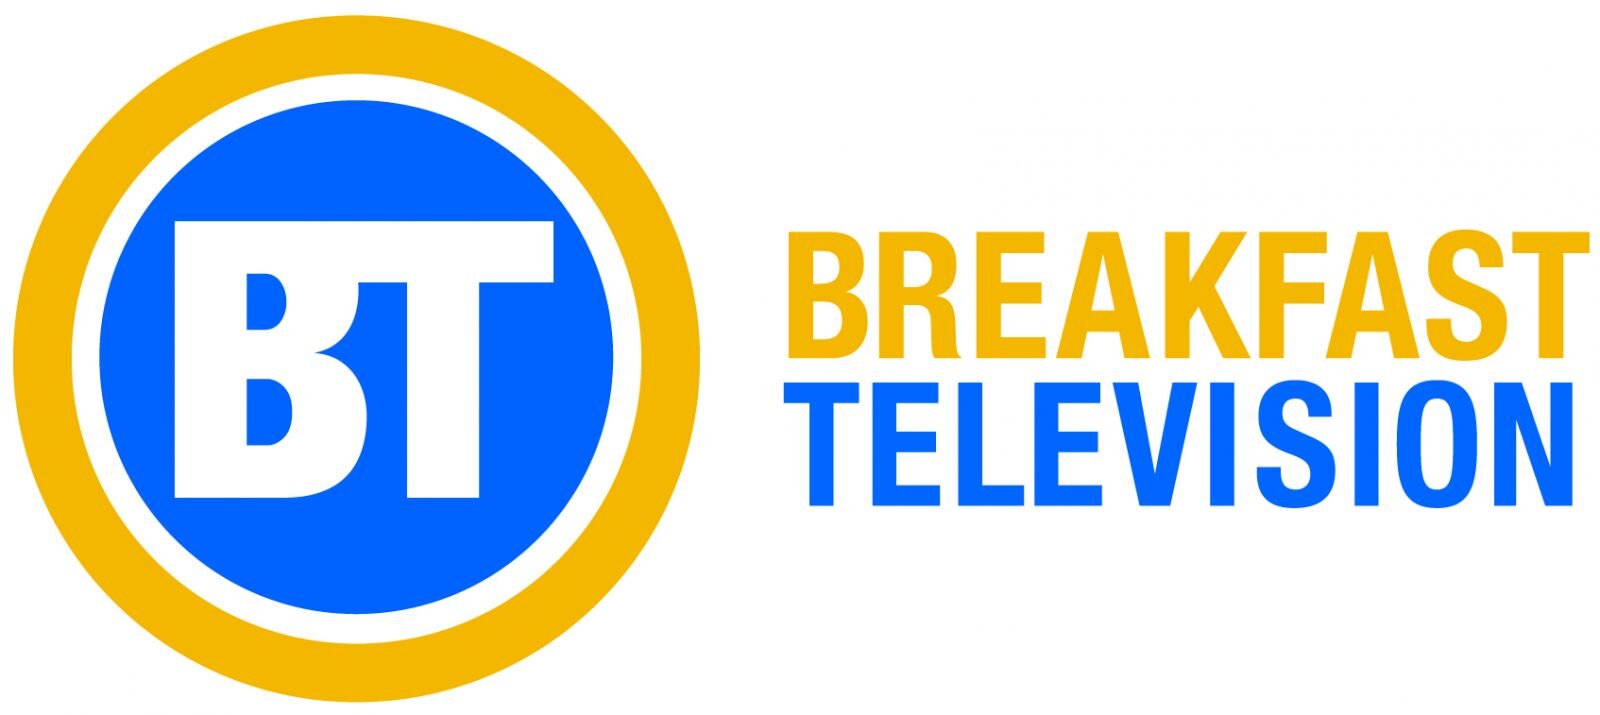 Breakfast_Television_logo.jpg